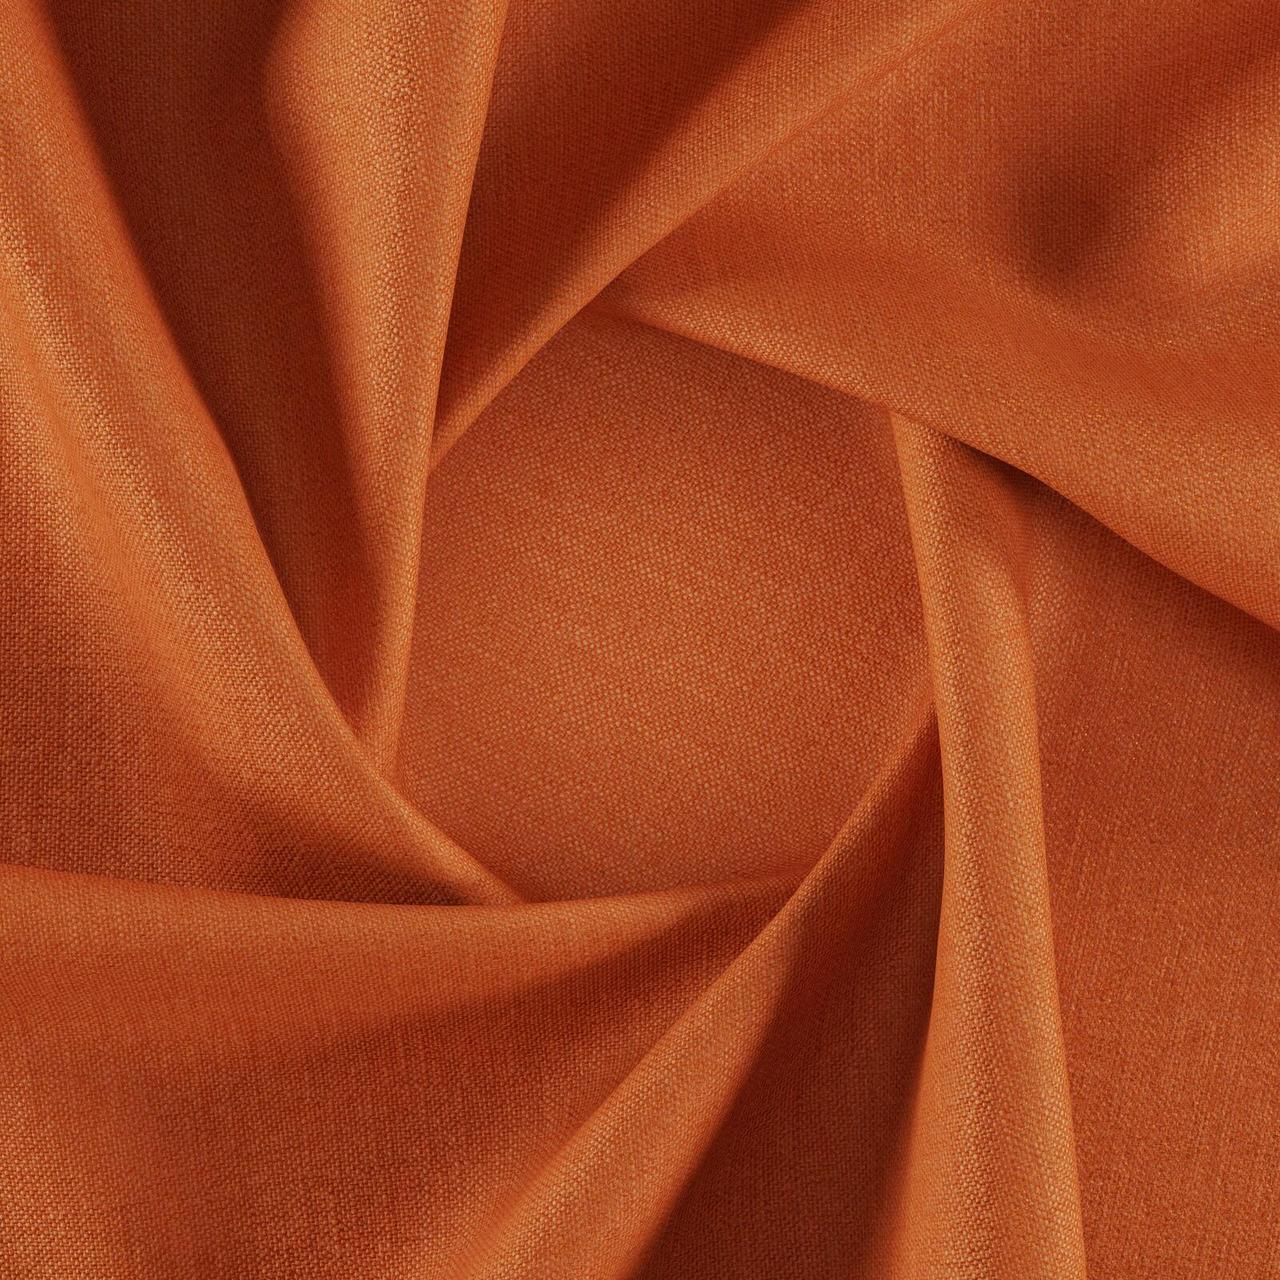 Тканина для перетяжки м'яких меблів шеніл Перфекто (Perfecto) помаранчевого кольору